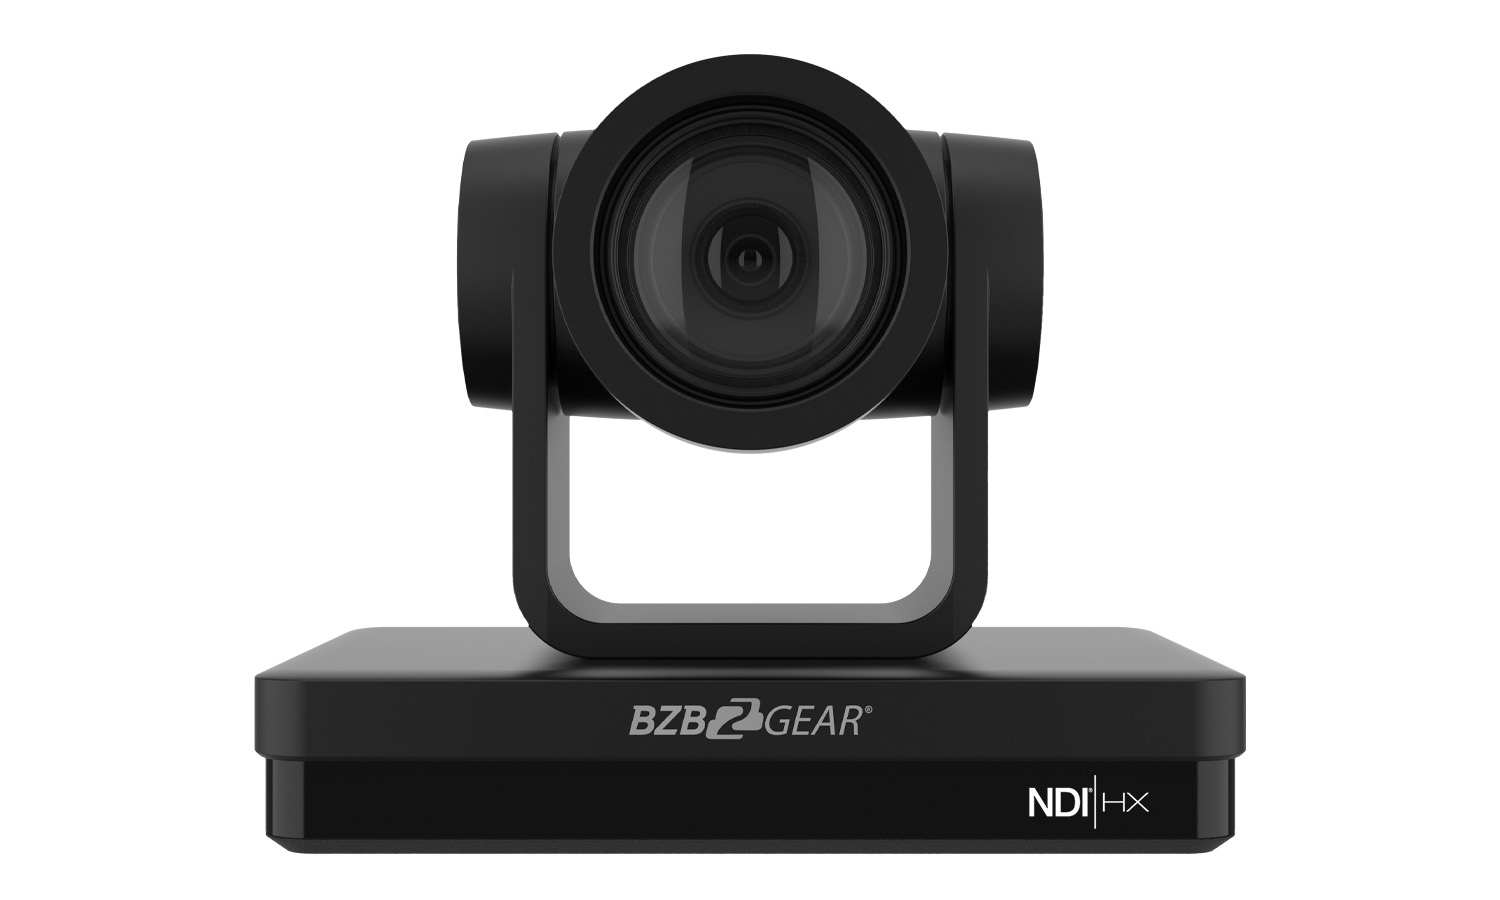 BG-UPTZ-ND30X-B Universal 1080P FHD PTZ 30X NDI/HDMI/SDI/USB 3.0 RS232/485 Live Streaming Camera (Black) by BZBGEAR